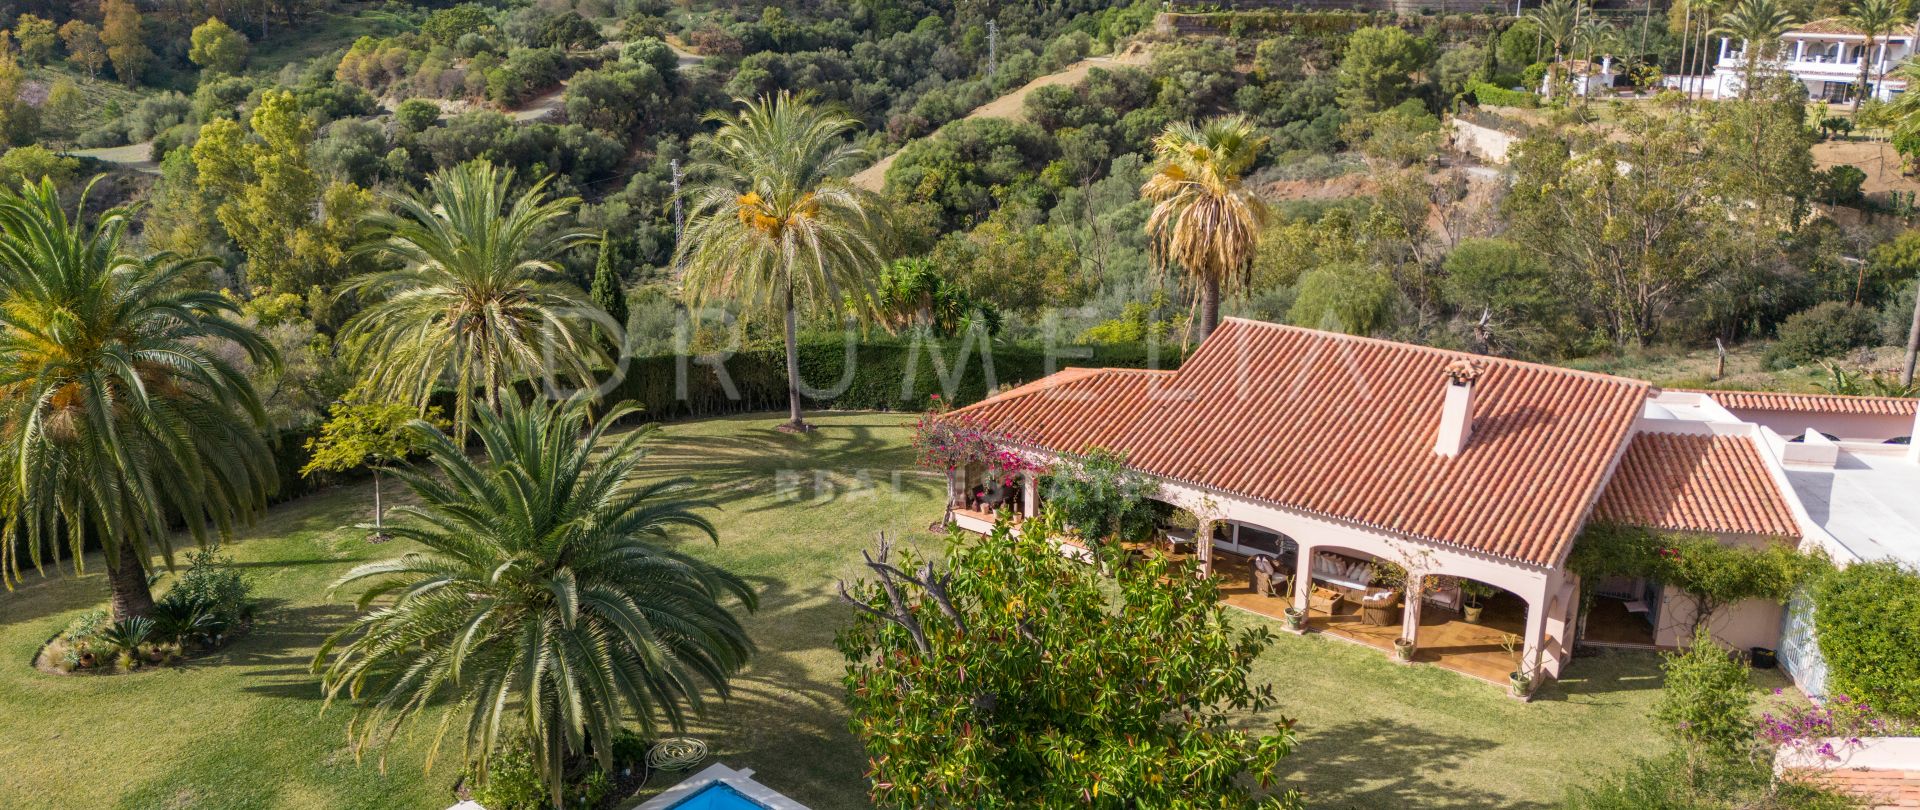 Villa mit andalusischem Charme im schönen Fuente del Espanto, Benahavis, zu verkaufen